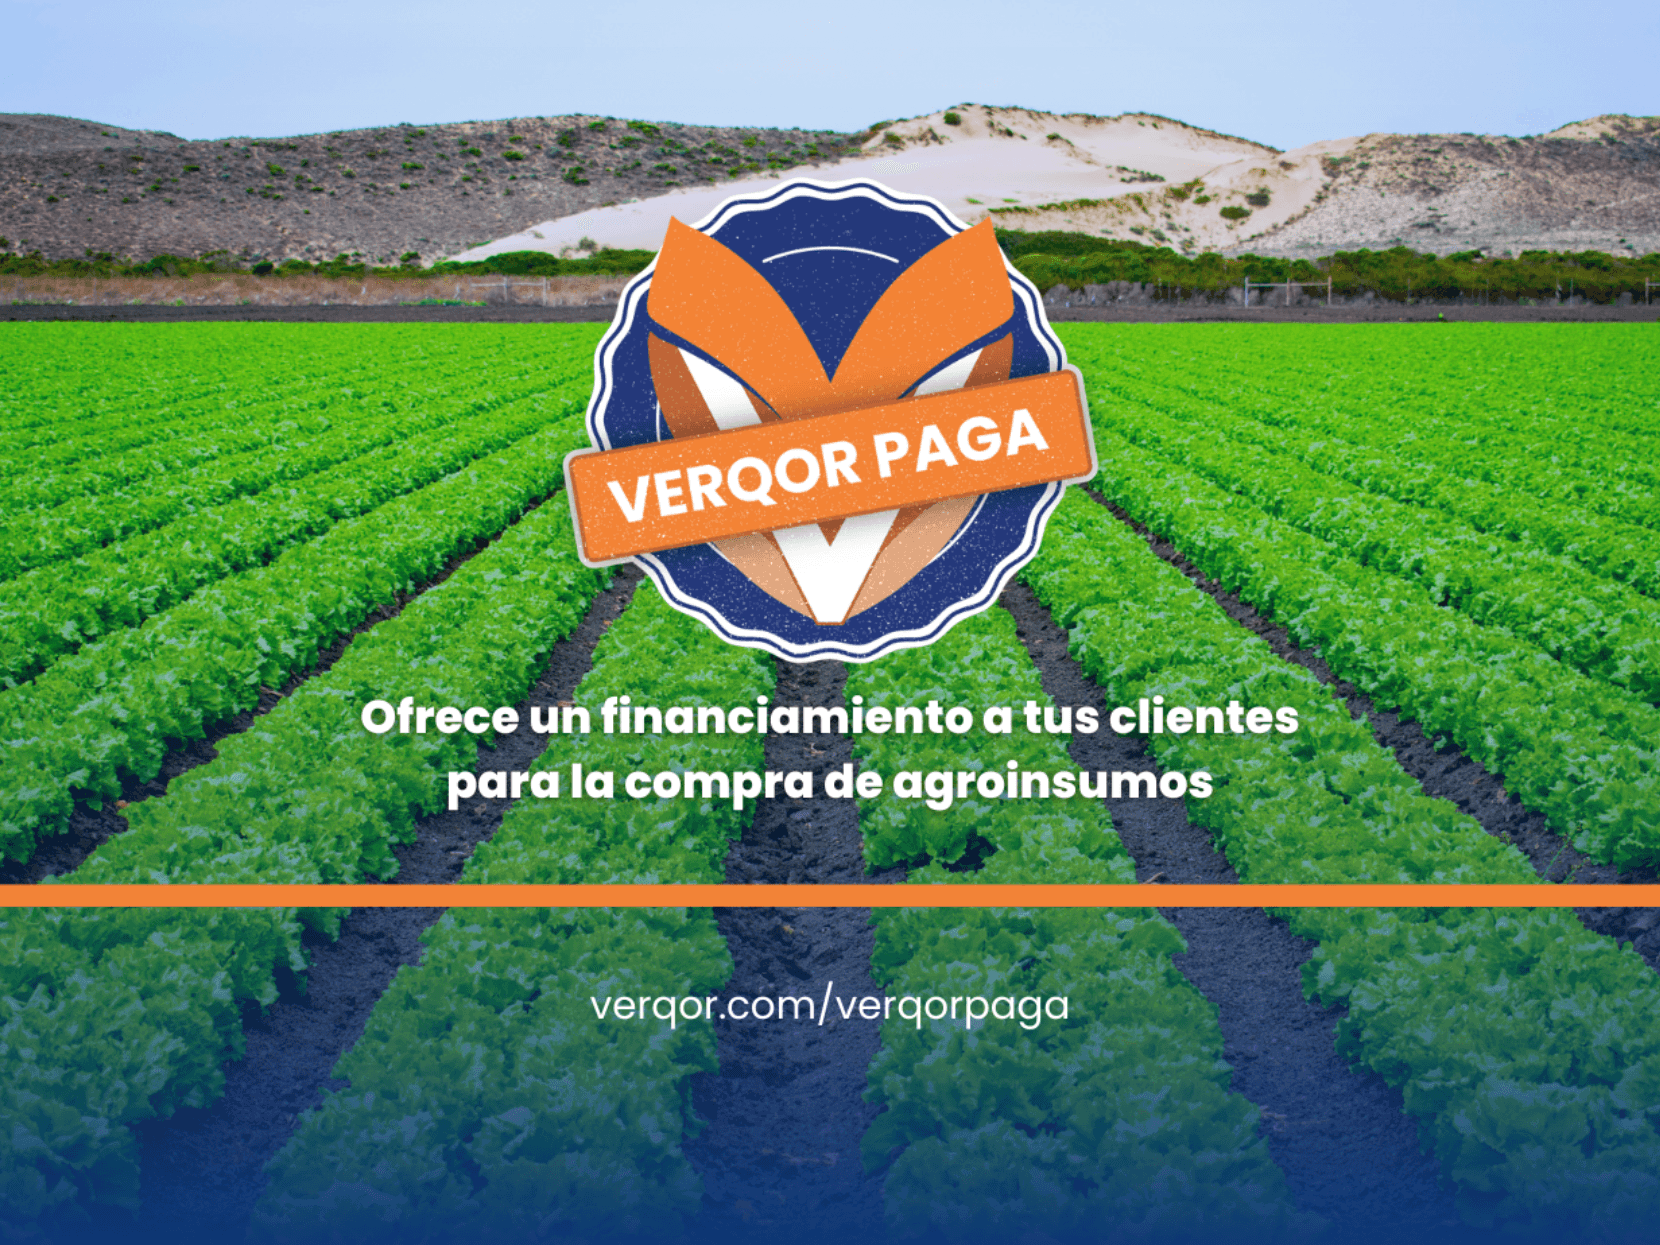 Con Verqor PAGA hacemos equipo para crecer tu tienda de agroinsumos